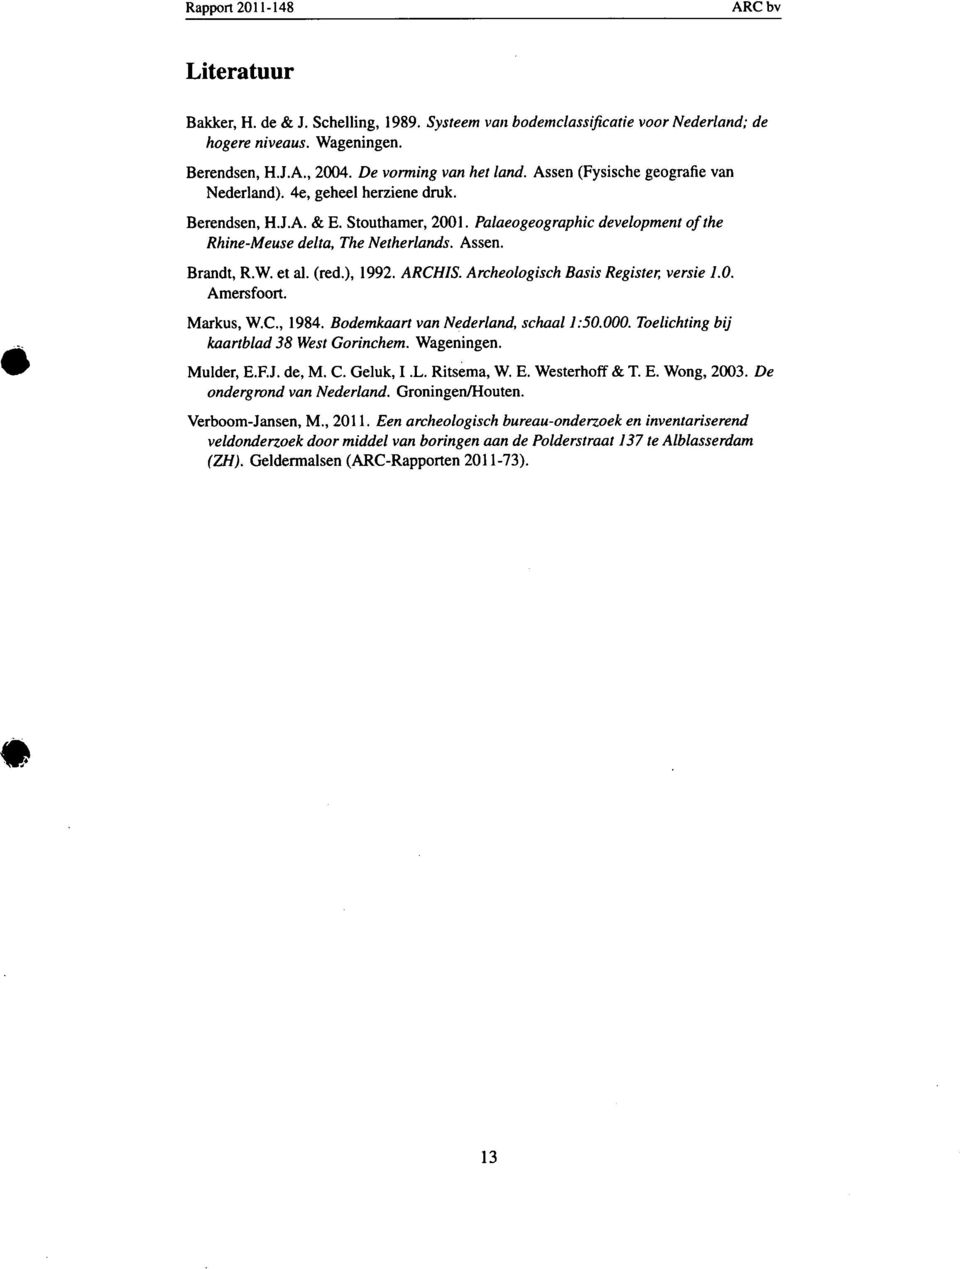 et al. (red.), 1992. ARCHIS. Archeologisch Basis Register, versie 1.0. Amersfoort. Markus, W.C., 1984. Bodemkaart van Nederland, schaal 1:50.000. Toelichting bij kaartblad 38 West Gorinchem.